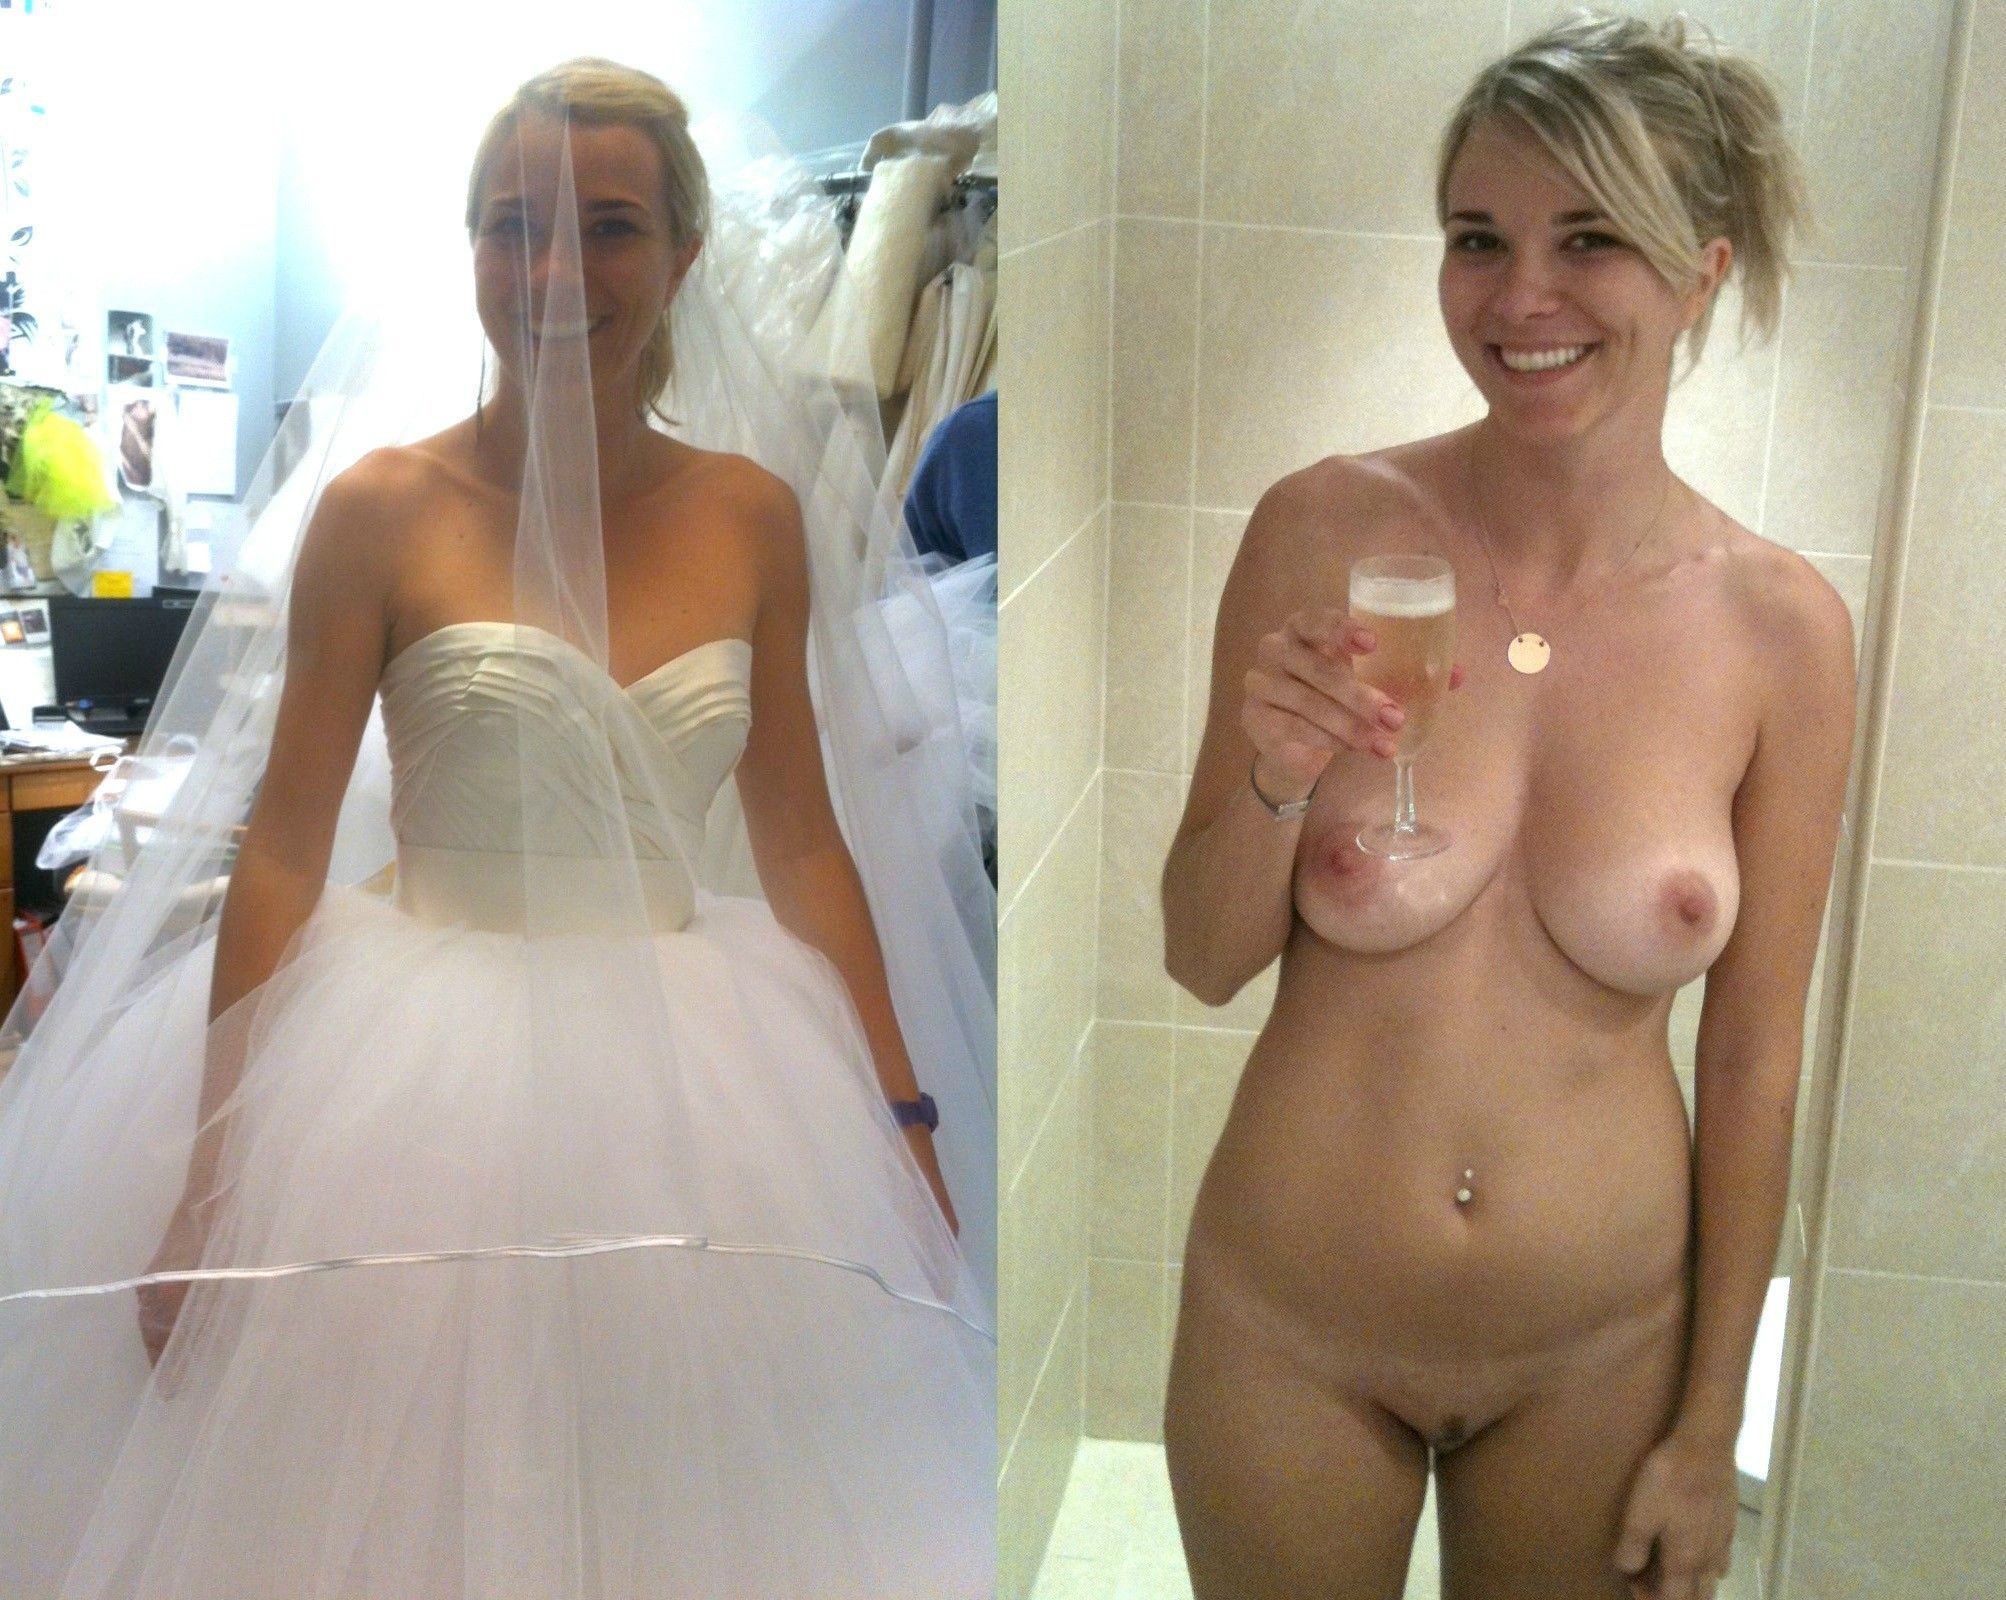 al lozano recommends Wedding Night Nude Pics